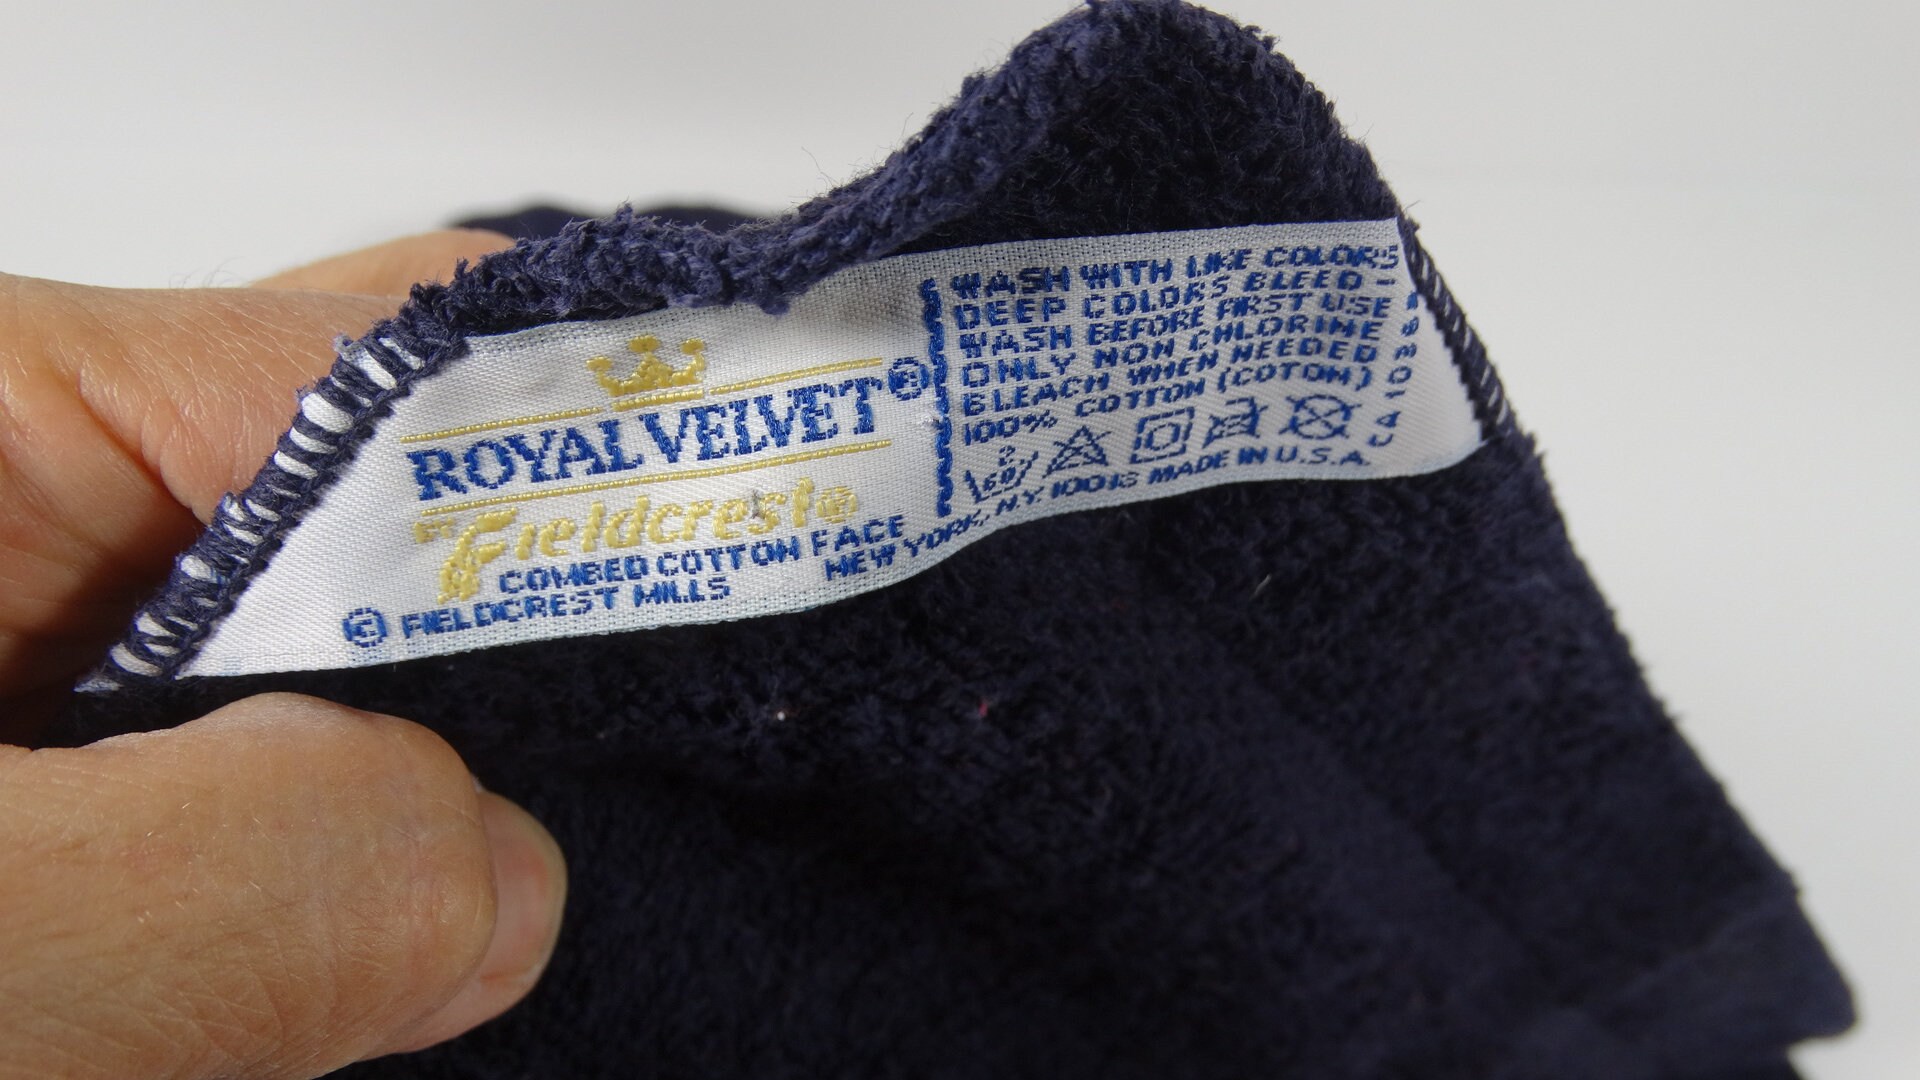 80s Navy Blue Towel Set 4 Pc Royal Velvet Towels and Washcloths Fieldcrest  Royal Velvet Vintage Hand Towel Washcloth Set 